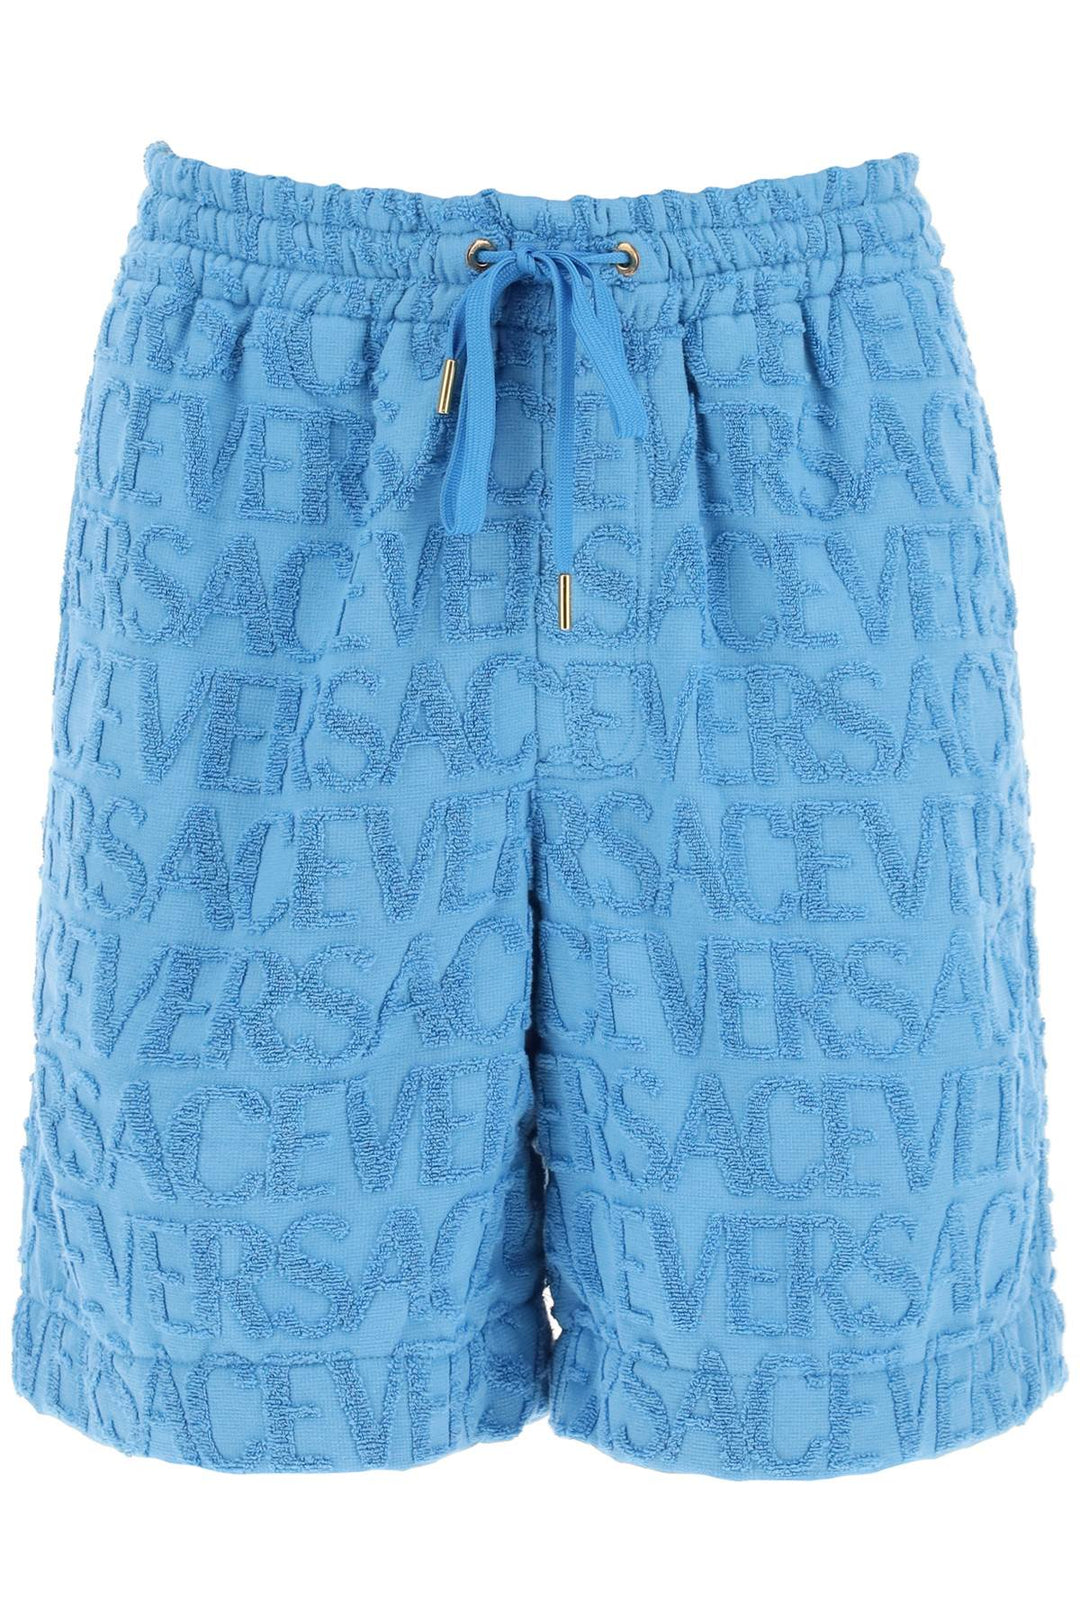 Versace Allover Terry Cloth Shorts   Celeste